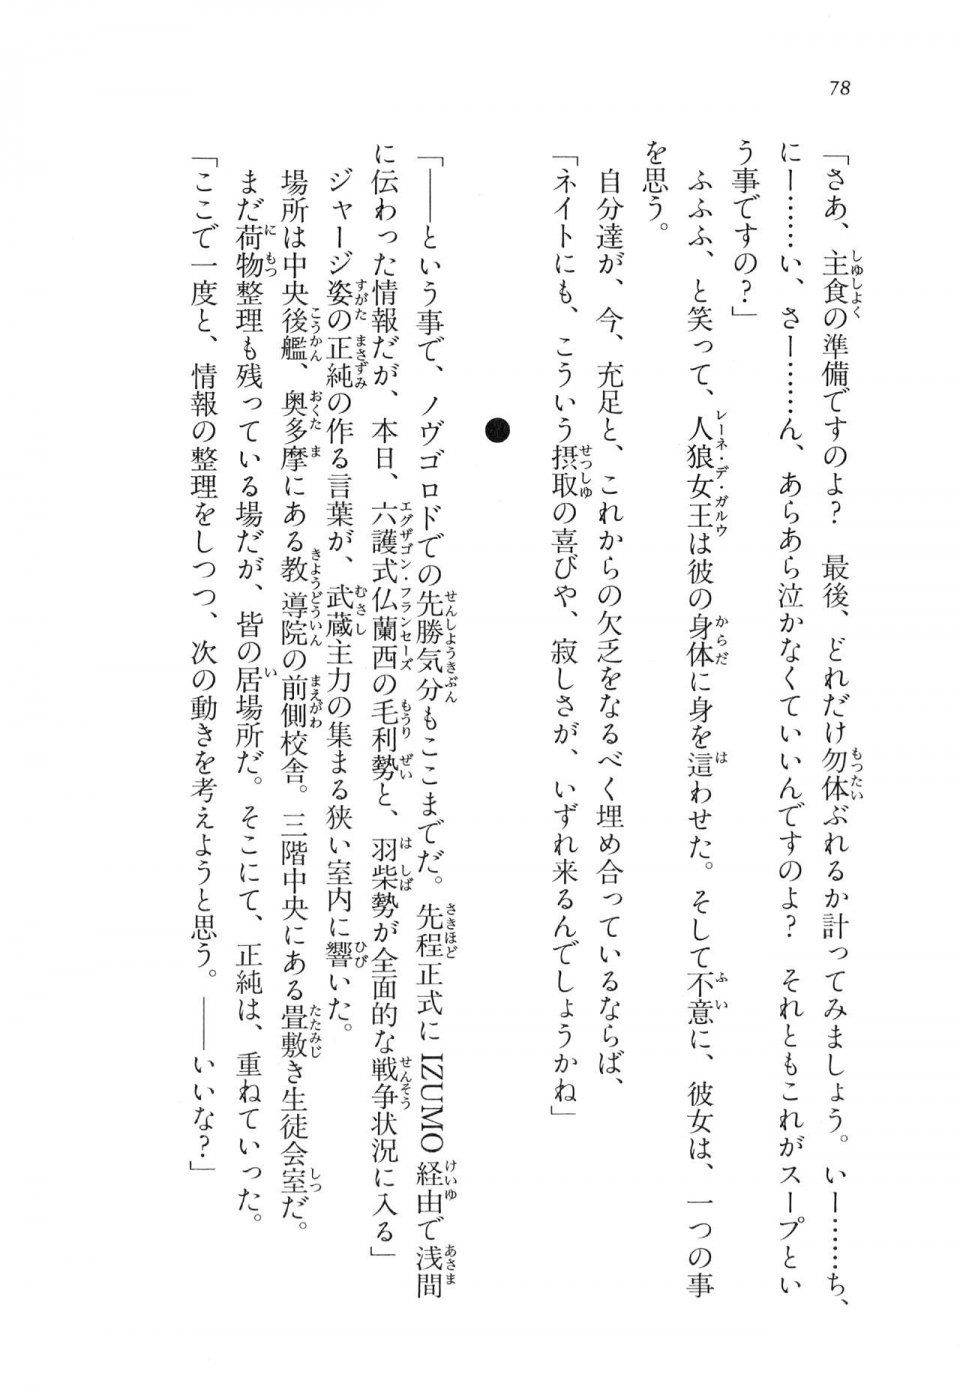 Kyoukai Senjou no Horizon LN Vol 11(5A) - Photo #78